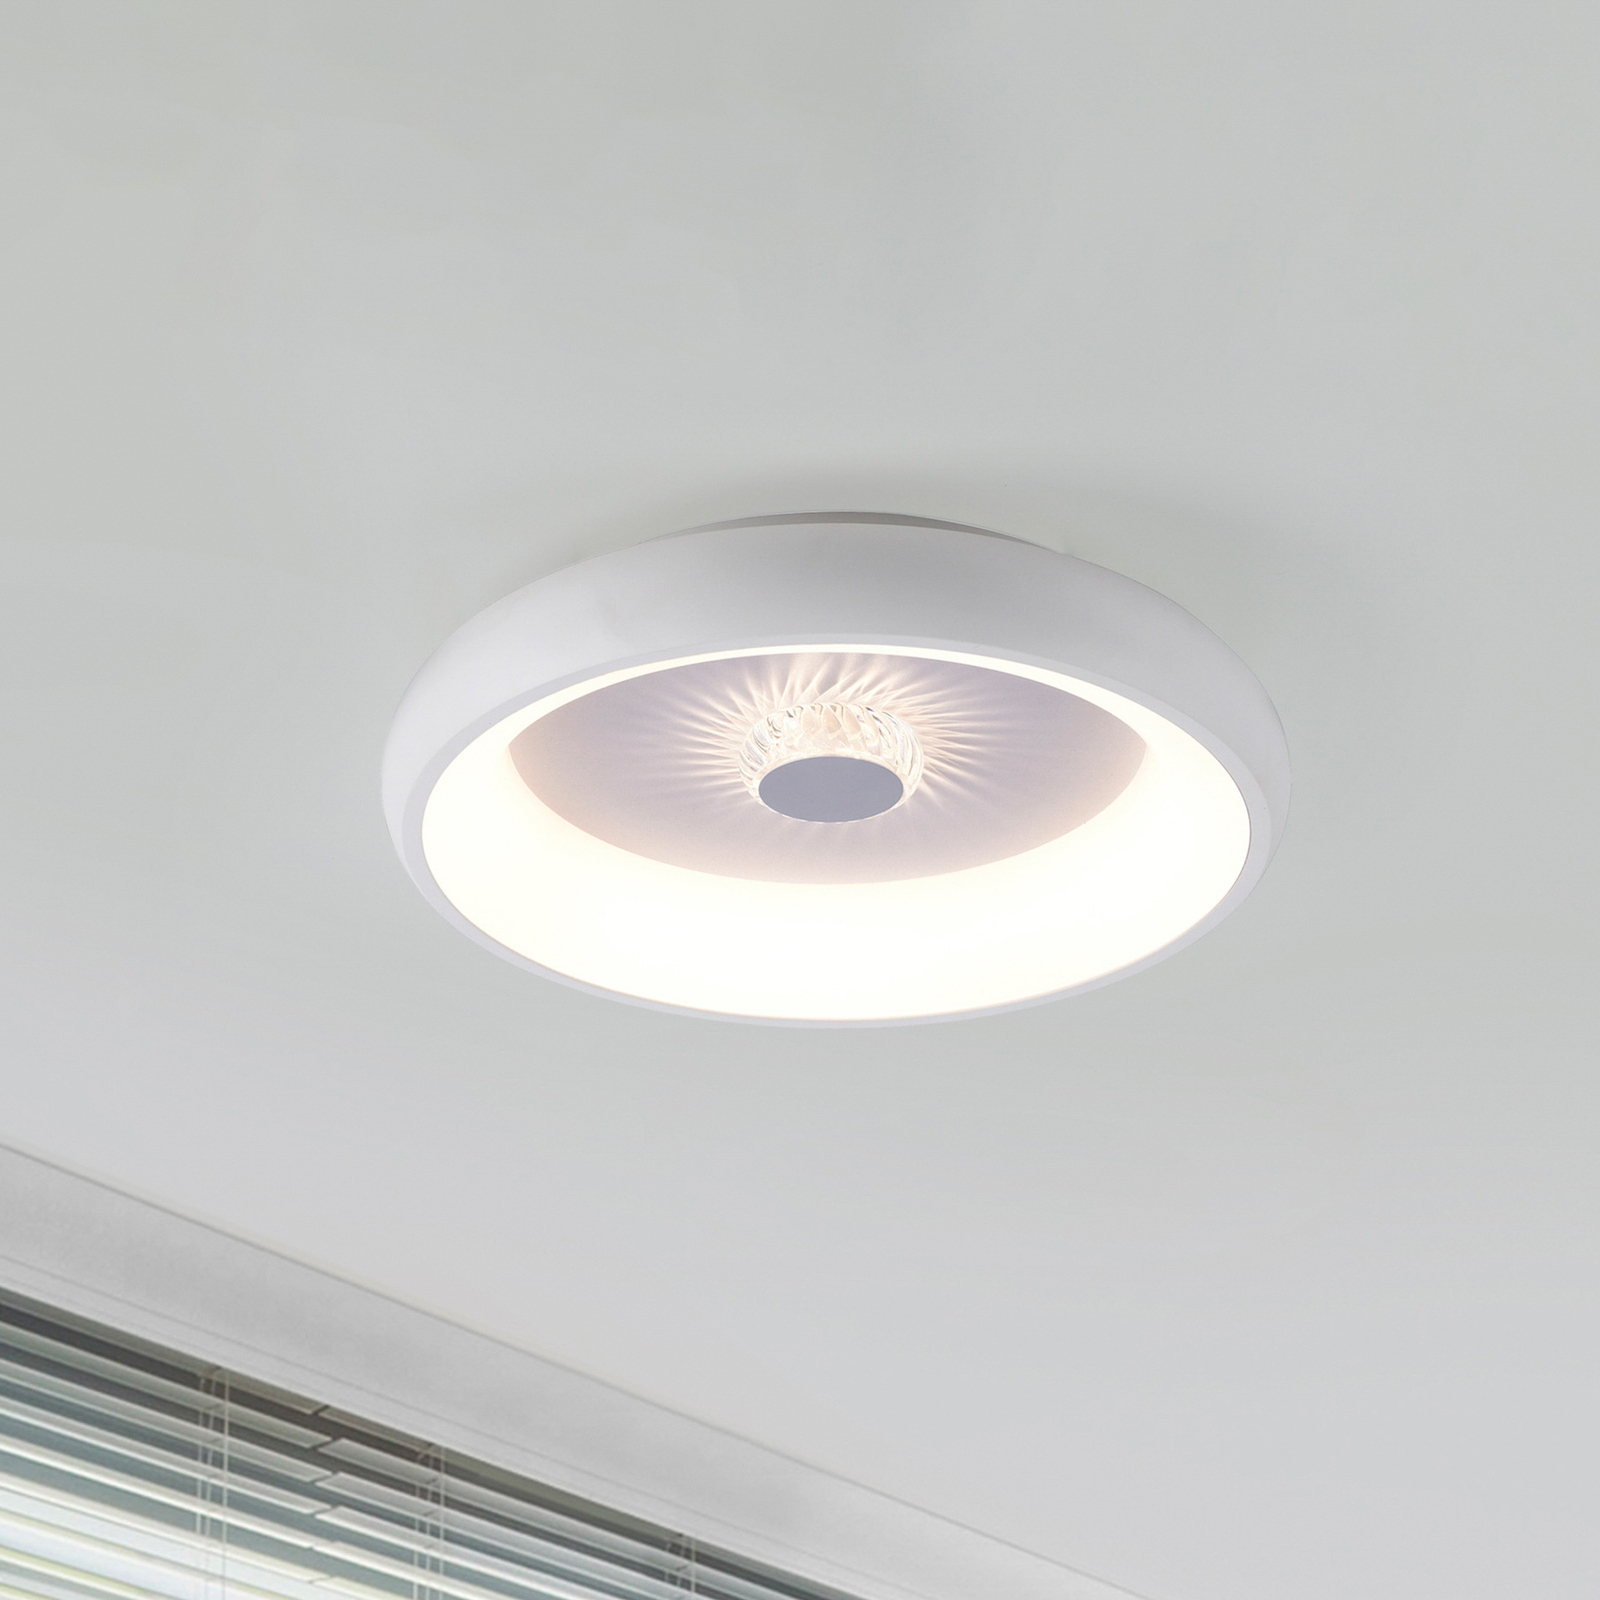 Vertigo LED ceiling light, CCT, Ø 46.5 cm, white